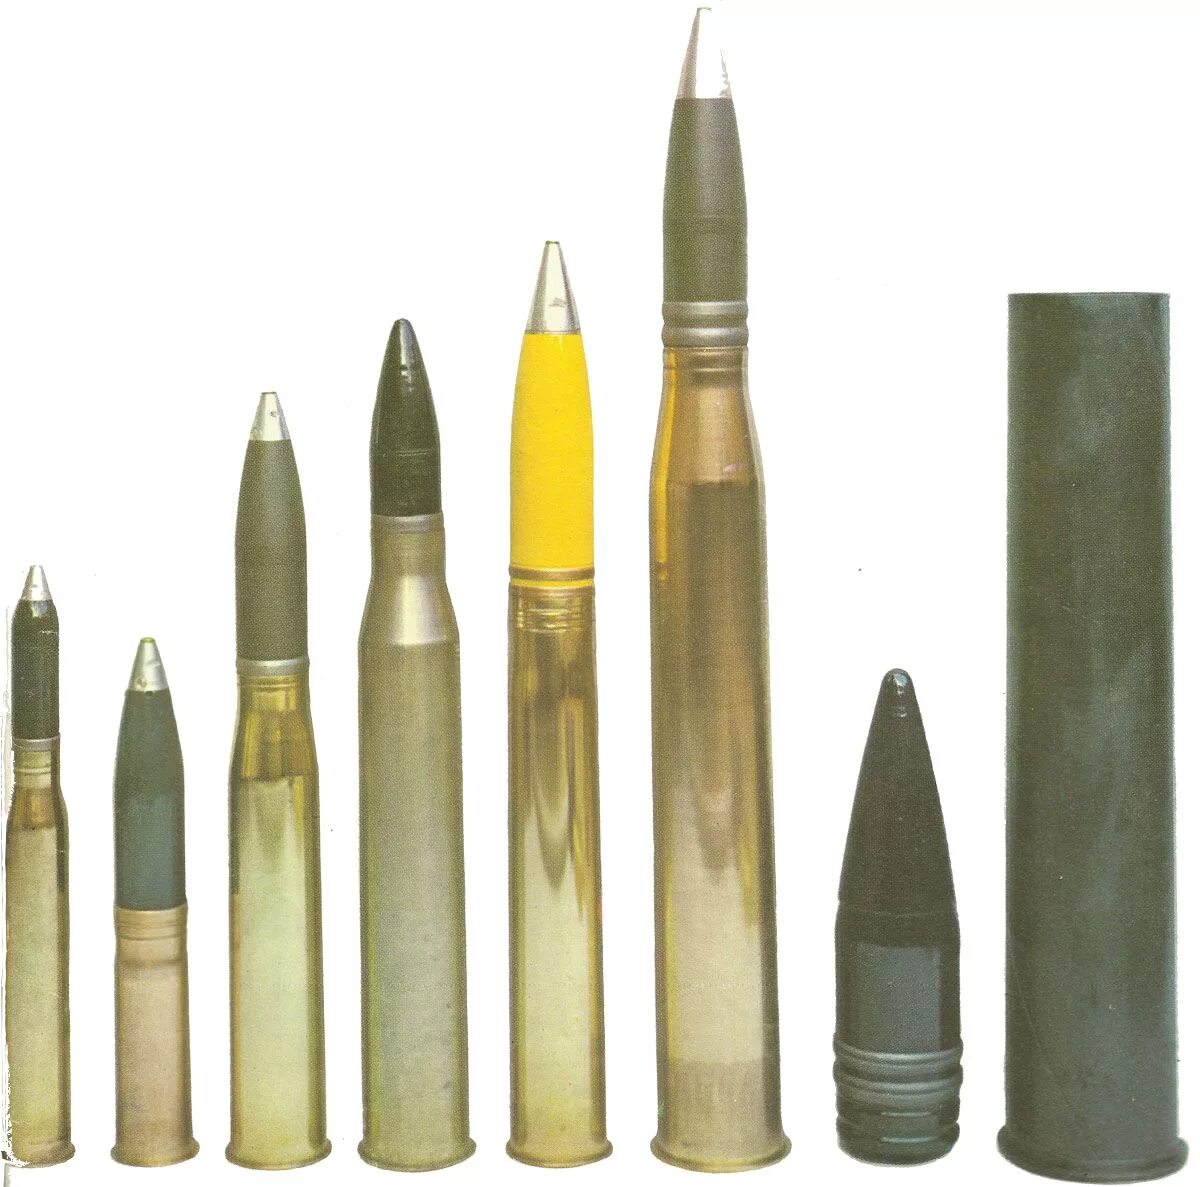 55 08 1 8. 75 Мм снаряд KWK 40. Снаряд 88 мм Pak 43. 75мм снаряды kwk42. KWK 40 снаряды.